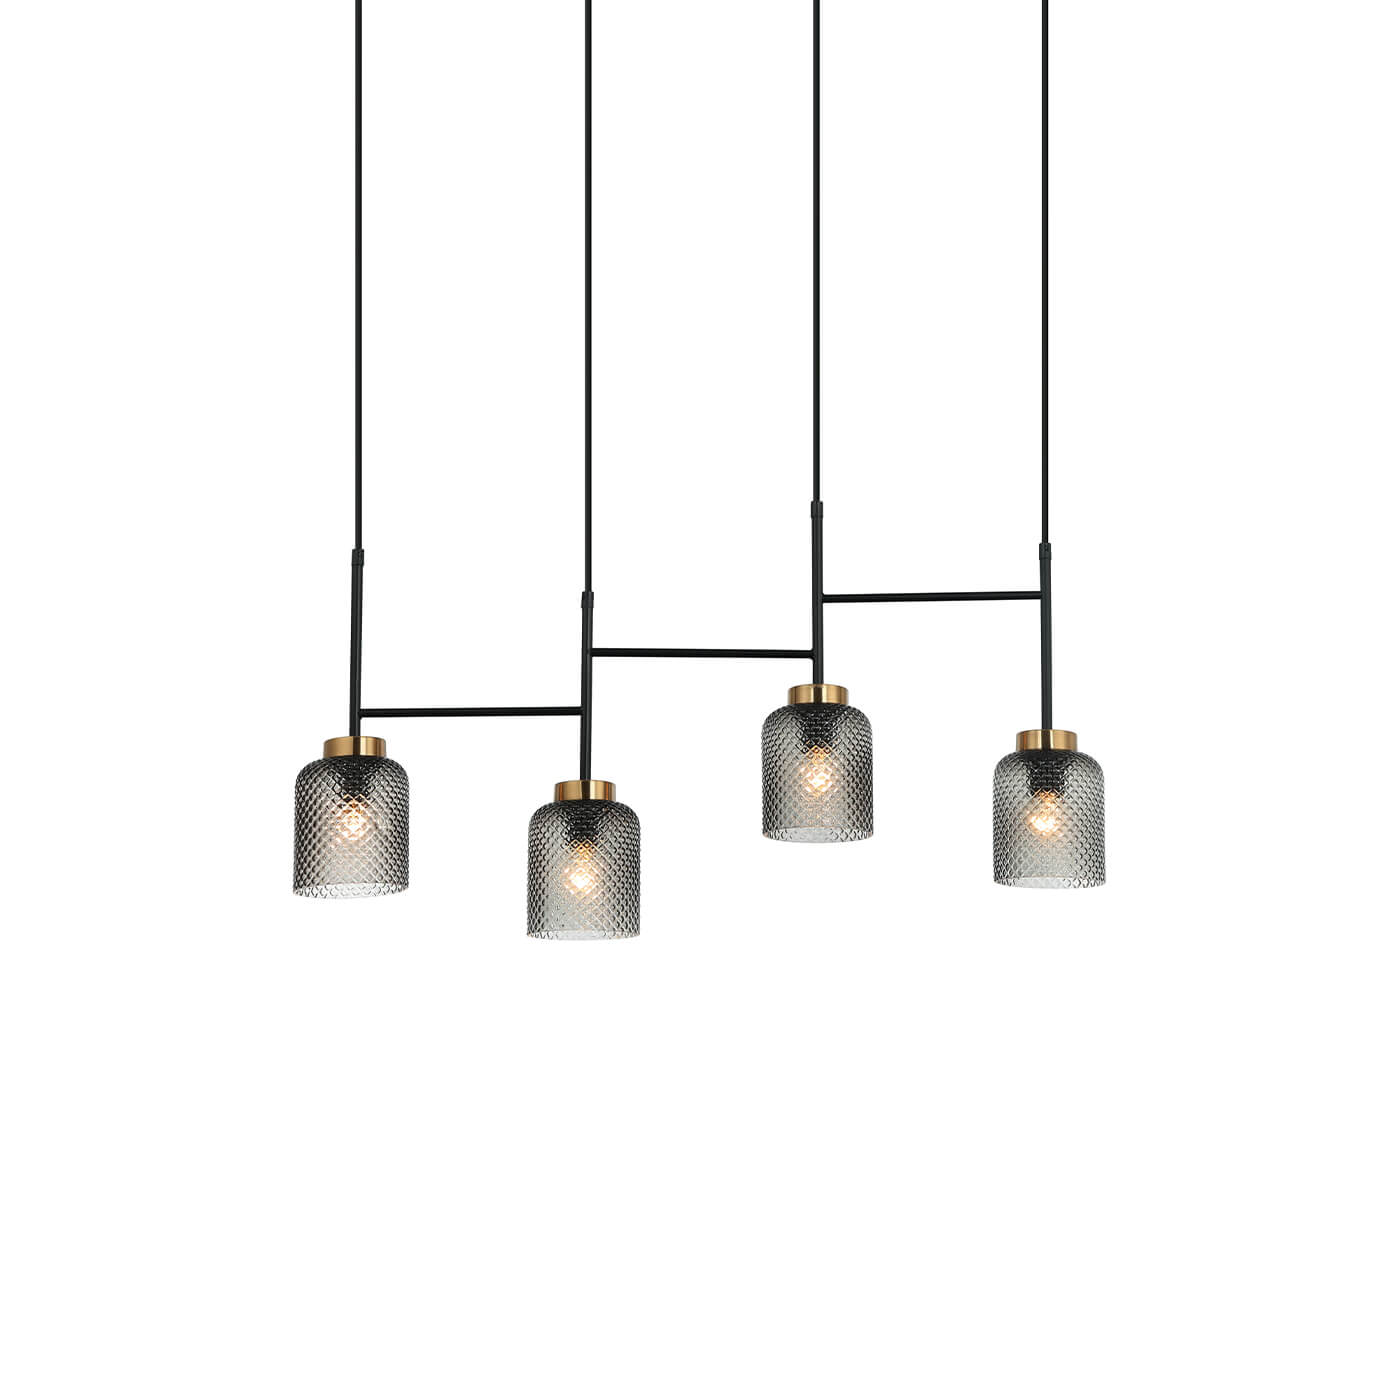 Cauti o lampa suspendata neagra ZAC S4L cu abajururi de sticla pentru living, design minimalist, elegant, pentru living, dining sau dormitor din colectia de lustre si candelabre Domicilio?